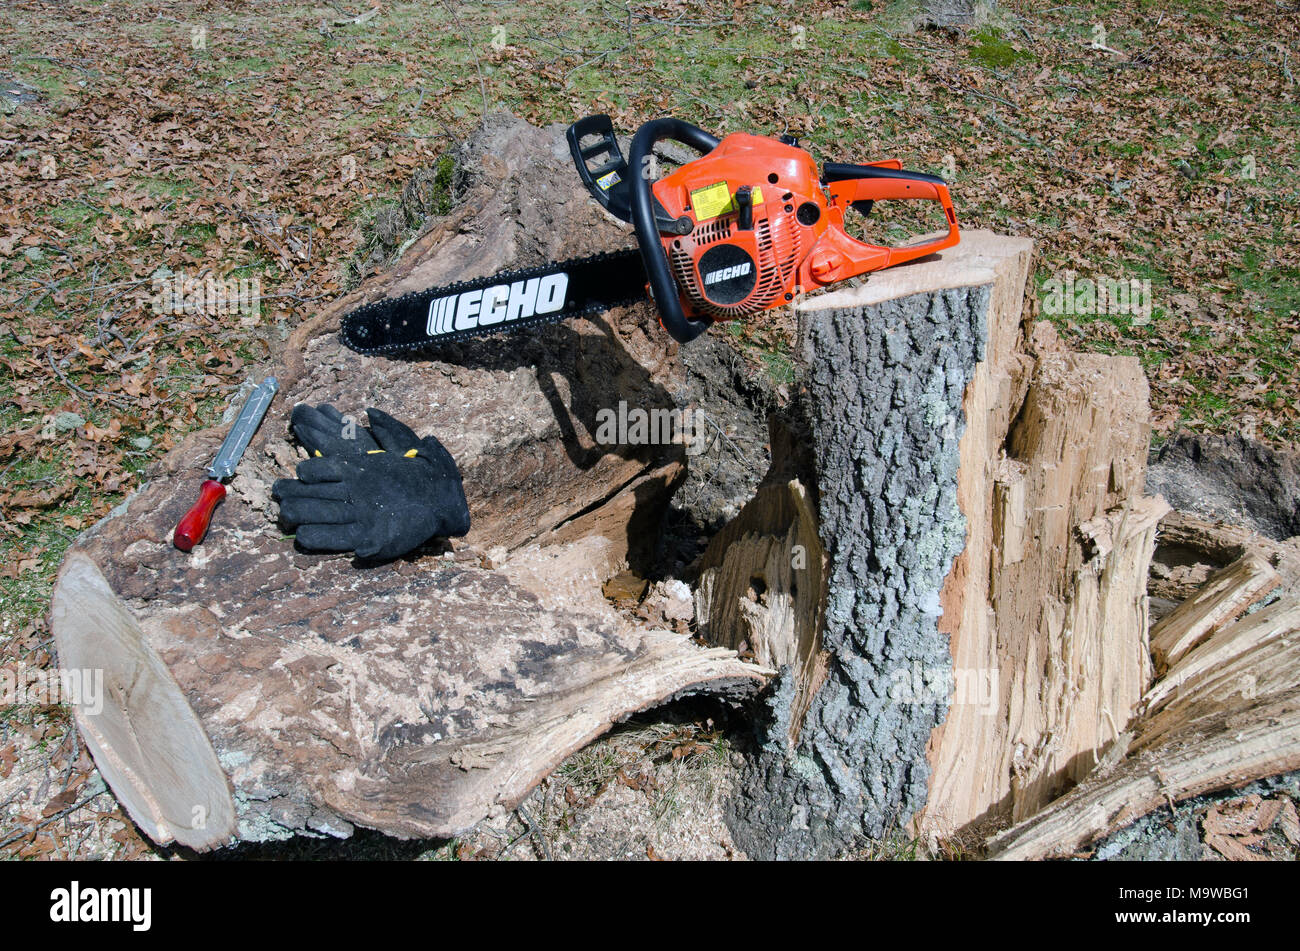 Echo motosierra en roble tocón de tronco de árbol caído derribados se cortan para leña junto con guantes y un archivo de afilado de cuchillas Foto de stock